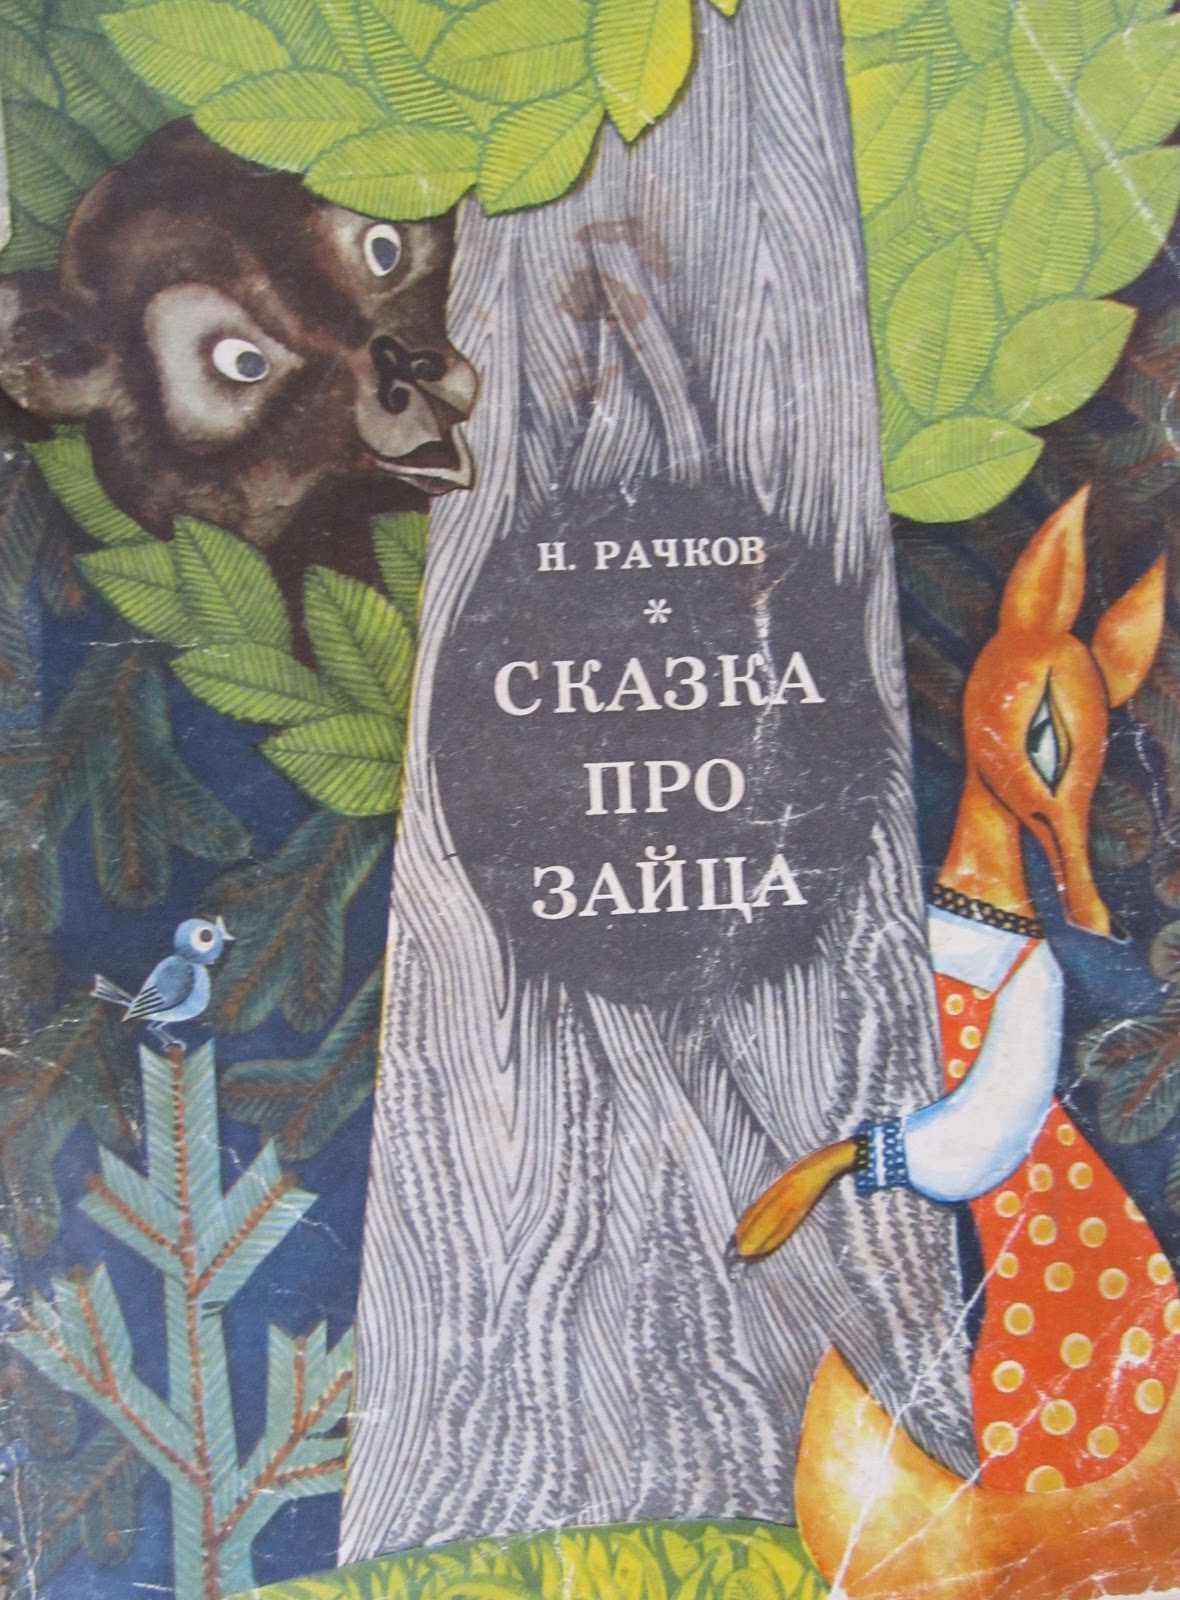 Книга про зайца. Сказка про звцуа. Зайцы в сказках. Сказки про Зайцев. Обложки книг сказки про зайчика.